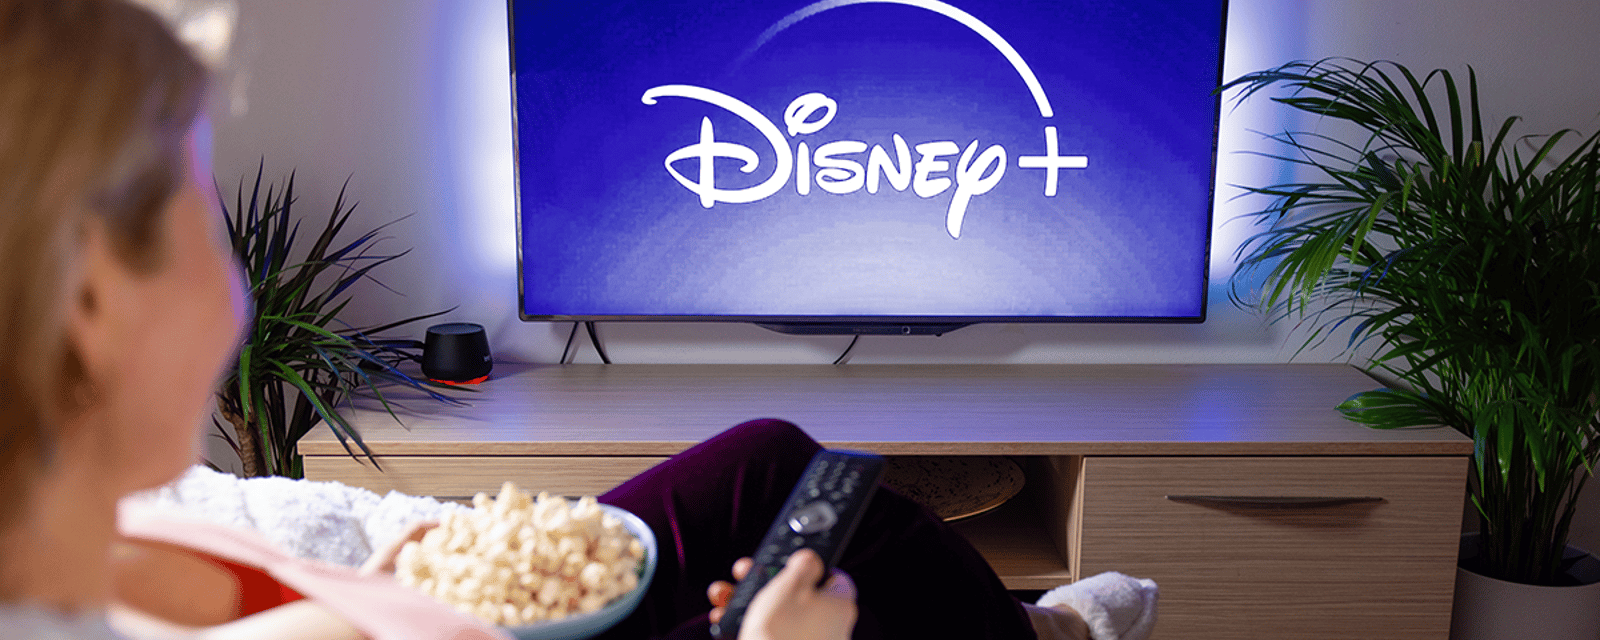 Disney+ annonce une importante augmentation du prix de ses abonnements